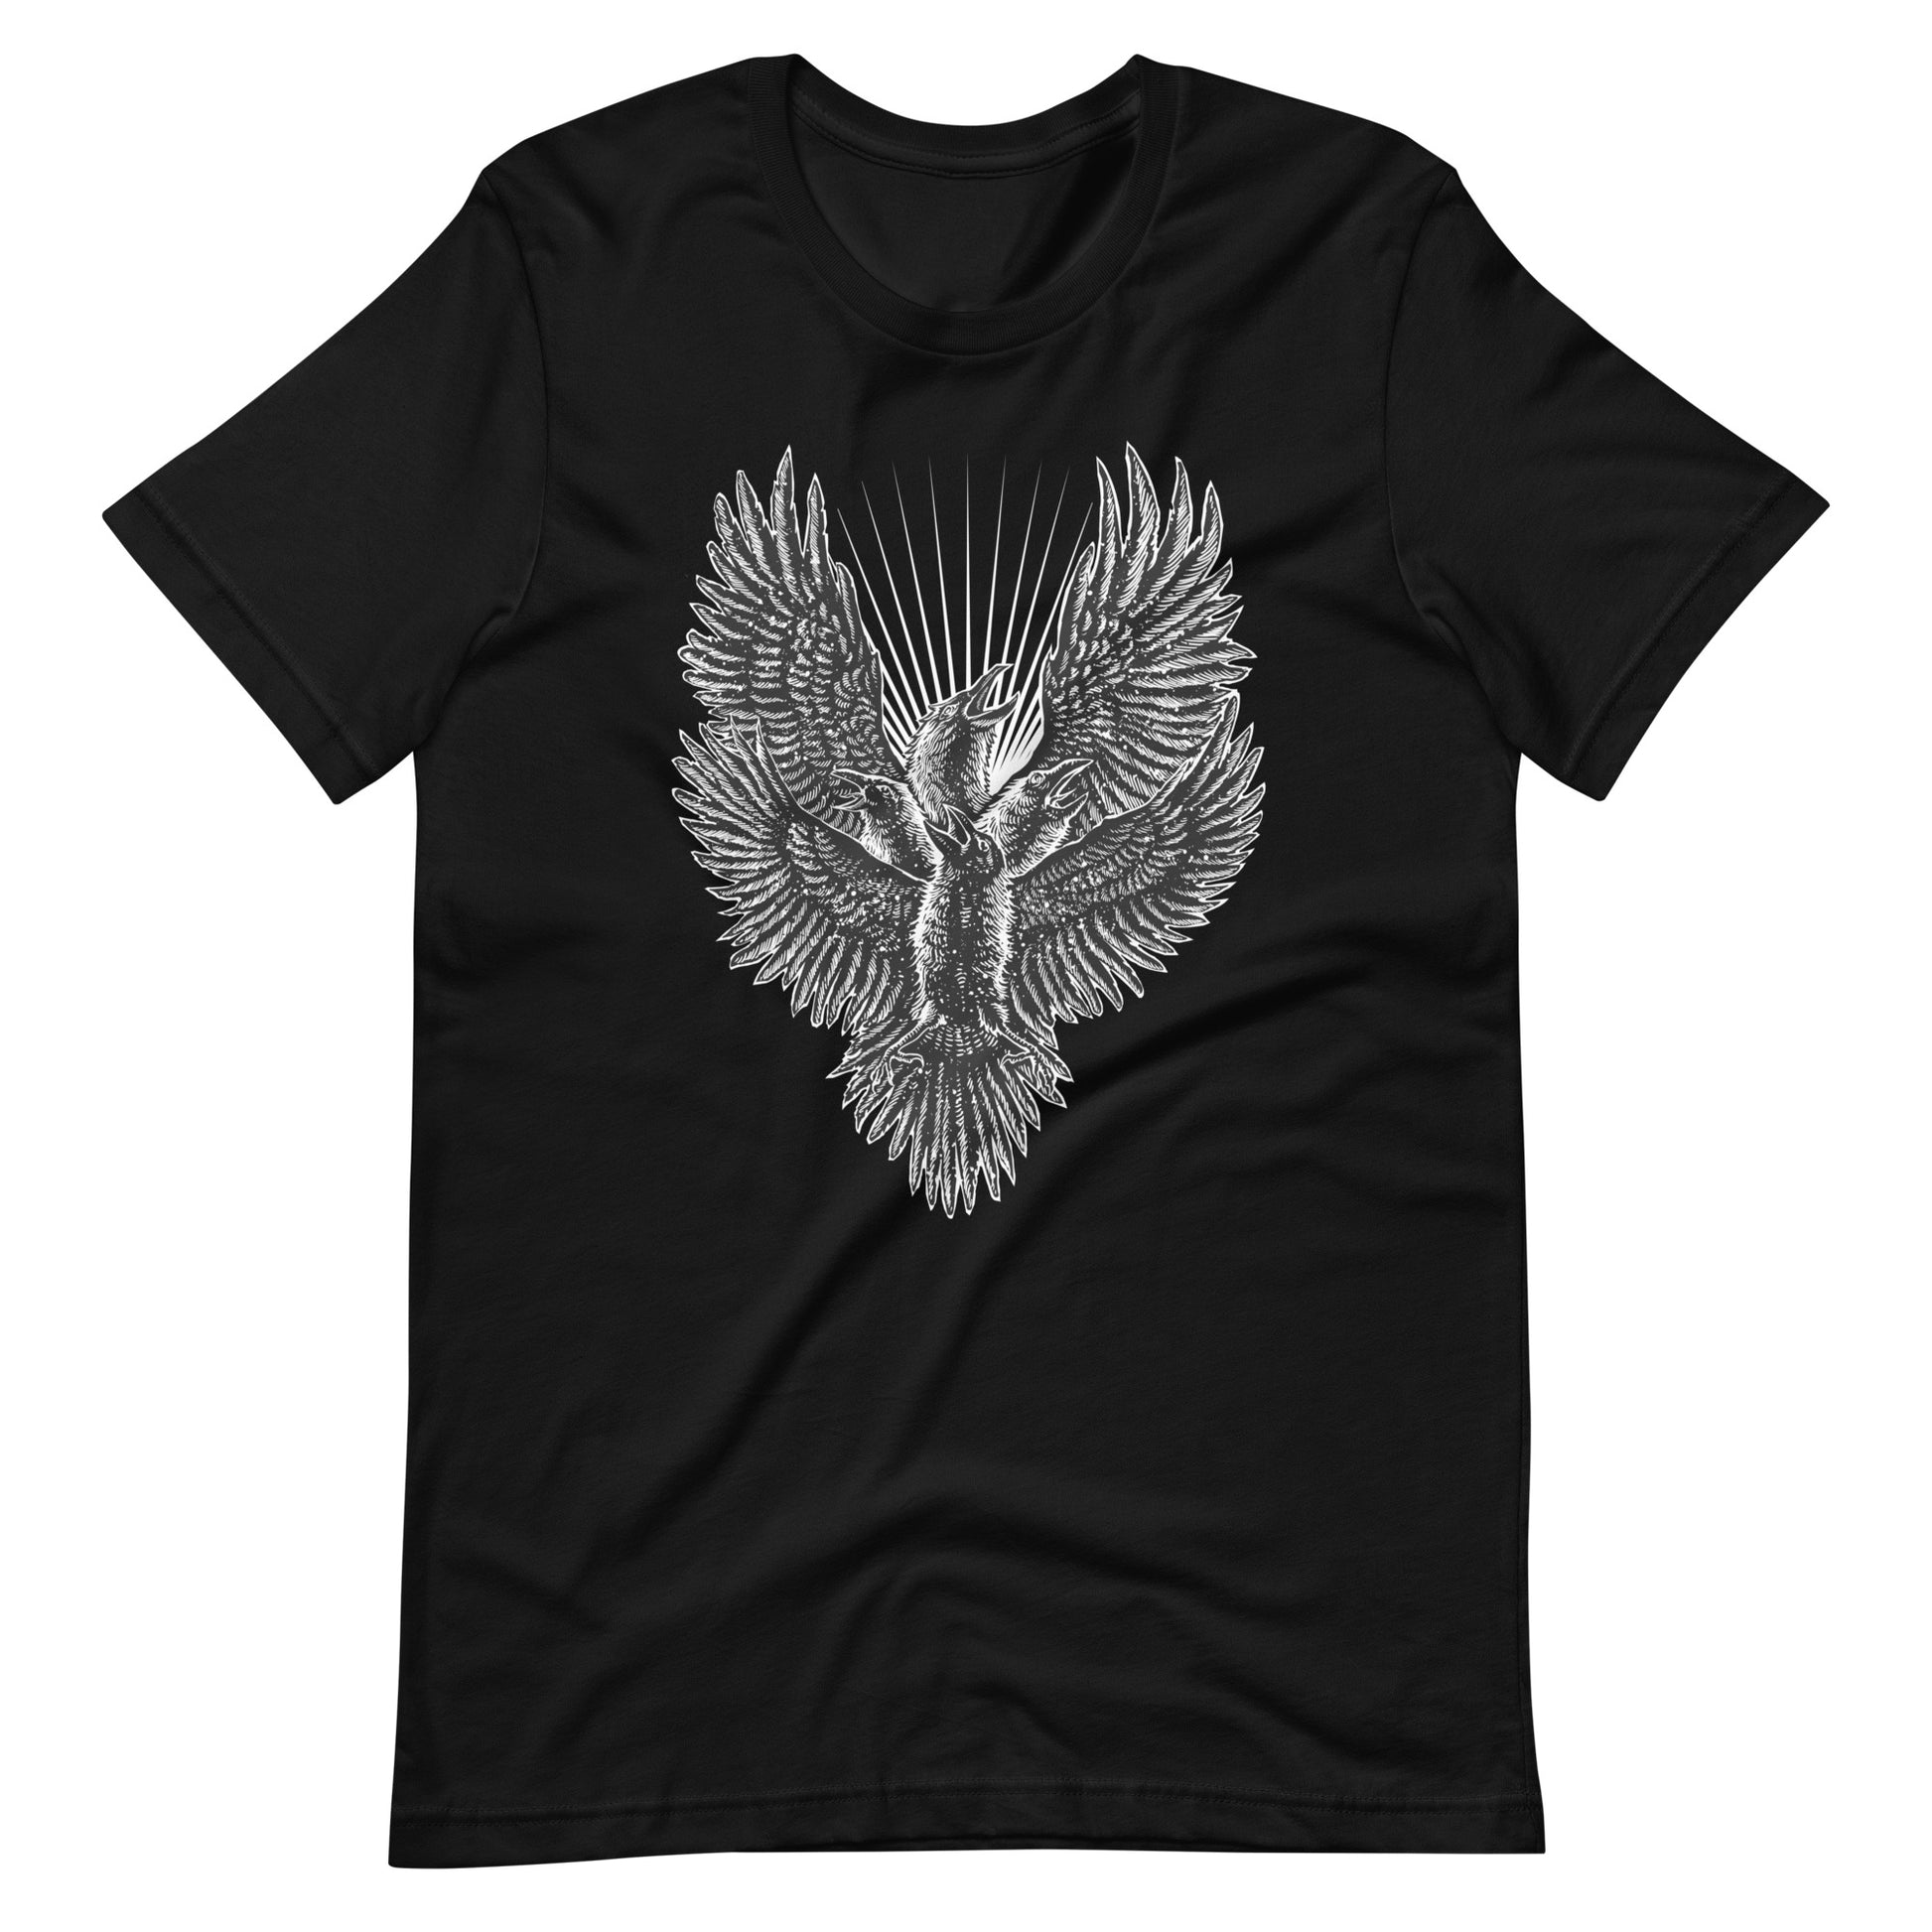 Luminous Crow - Men's t-shirt - Black Front